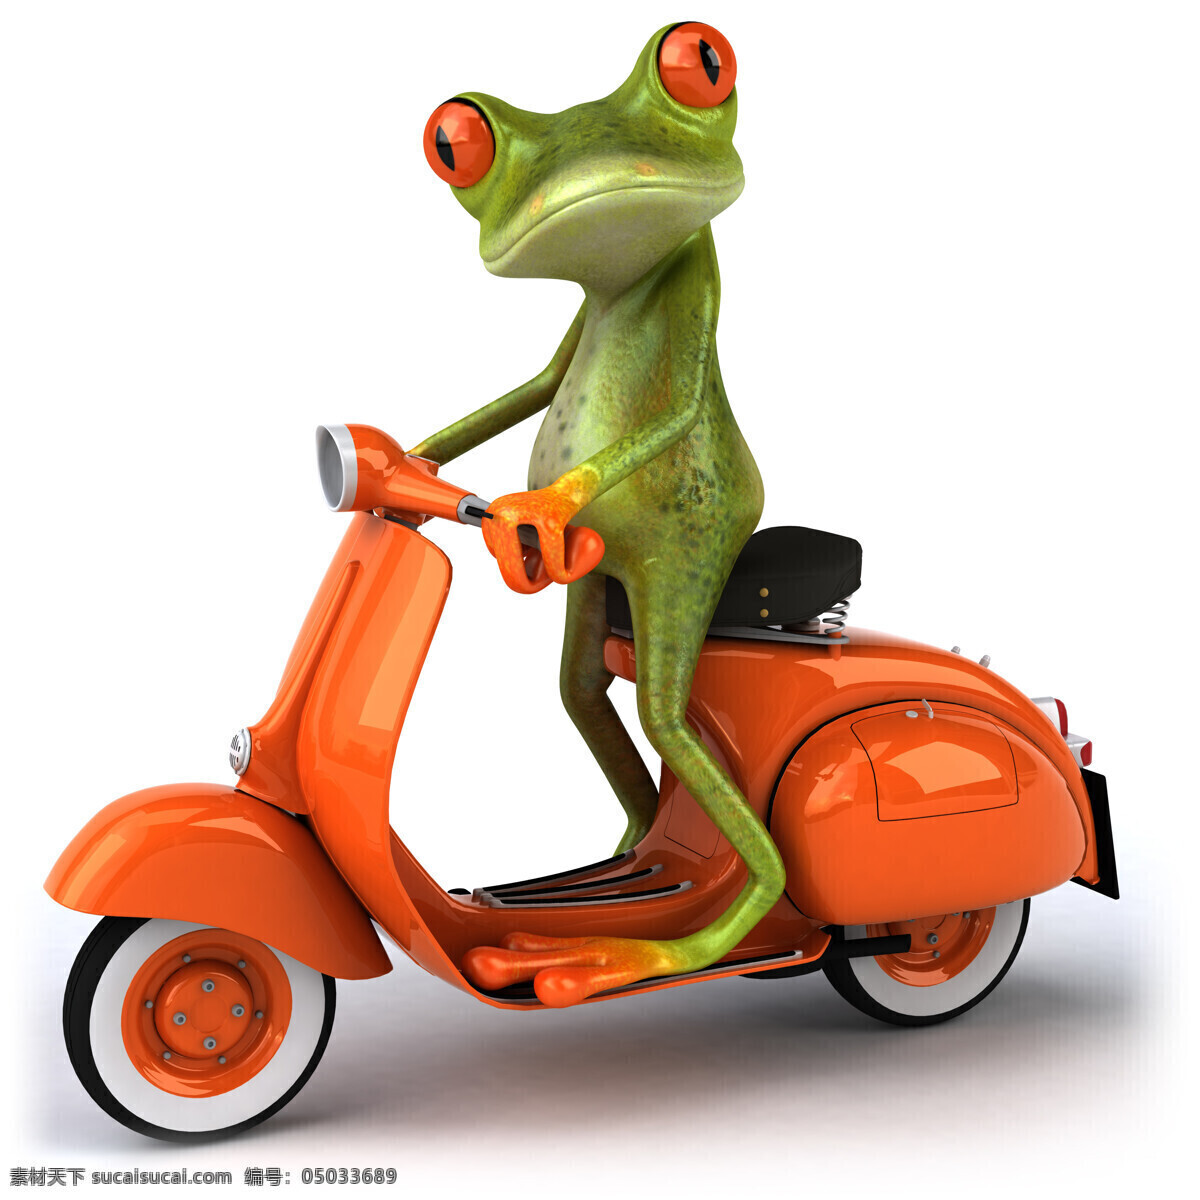 3d青蛙图片 3d青蛙 卡通青蛙 骑摩托车 疯狂青蛙 可爱逗趣青蛙 青蛙 创意 逗趣 青蛙王子 卡通 可爱 3d设计 高清图片